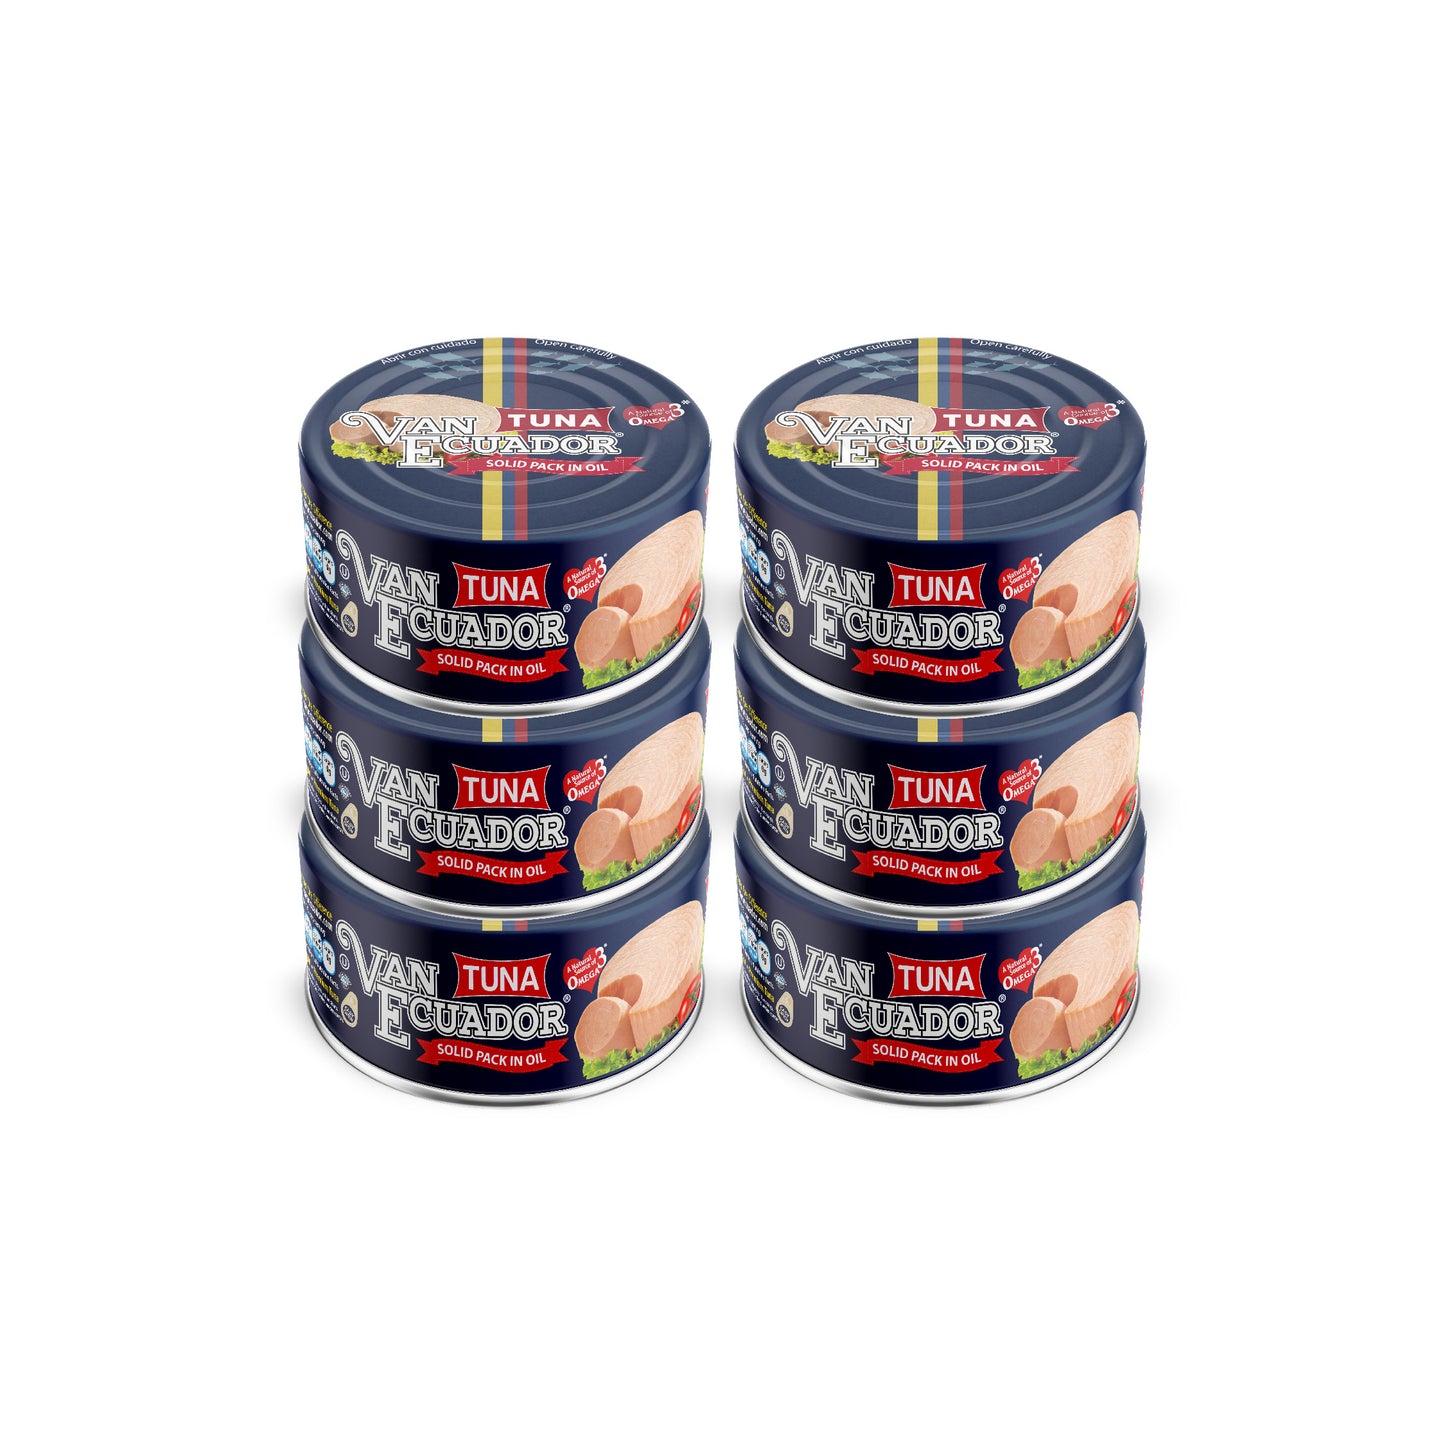 Van Ecuador - Premium Tuna in Oil 5.3 oz